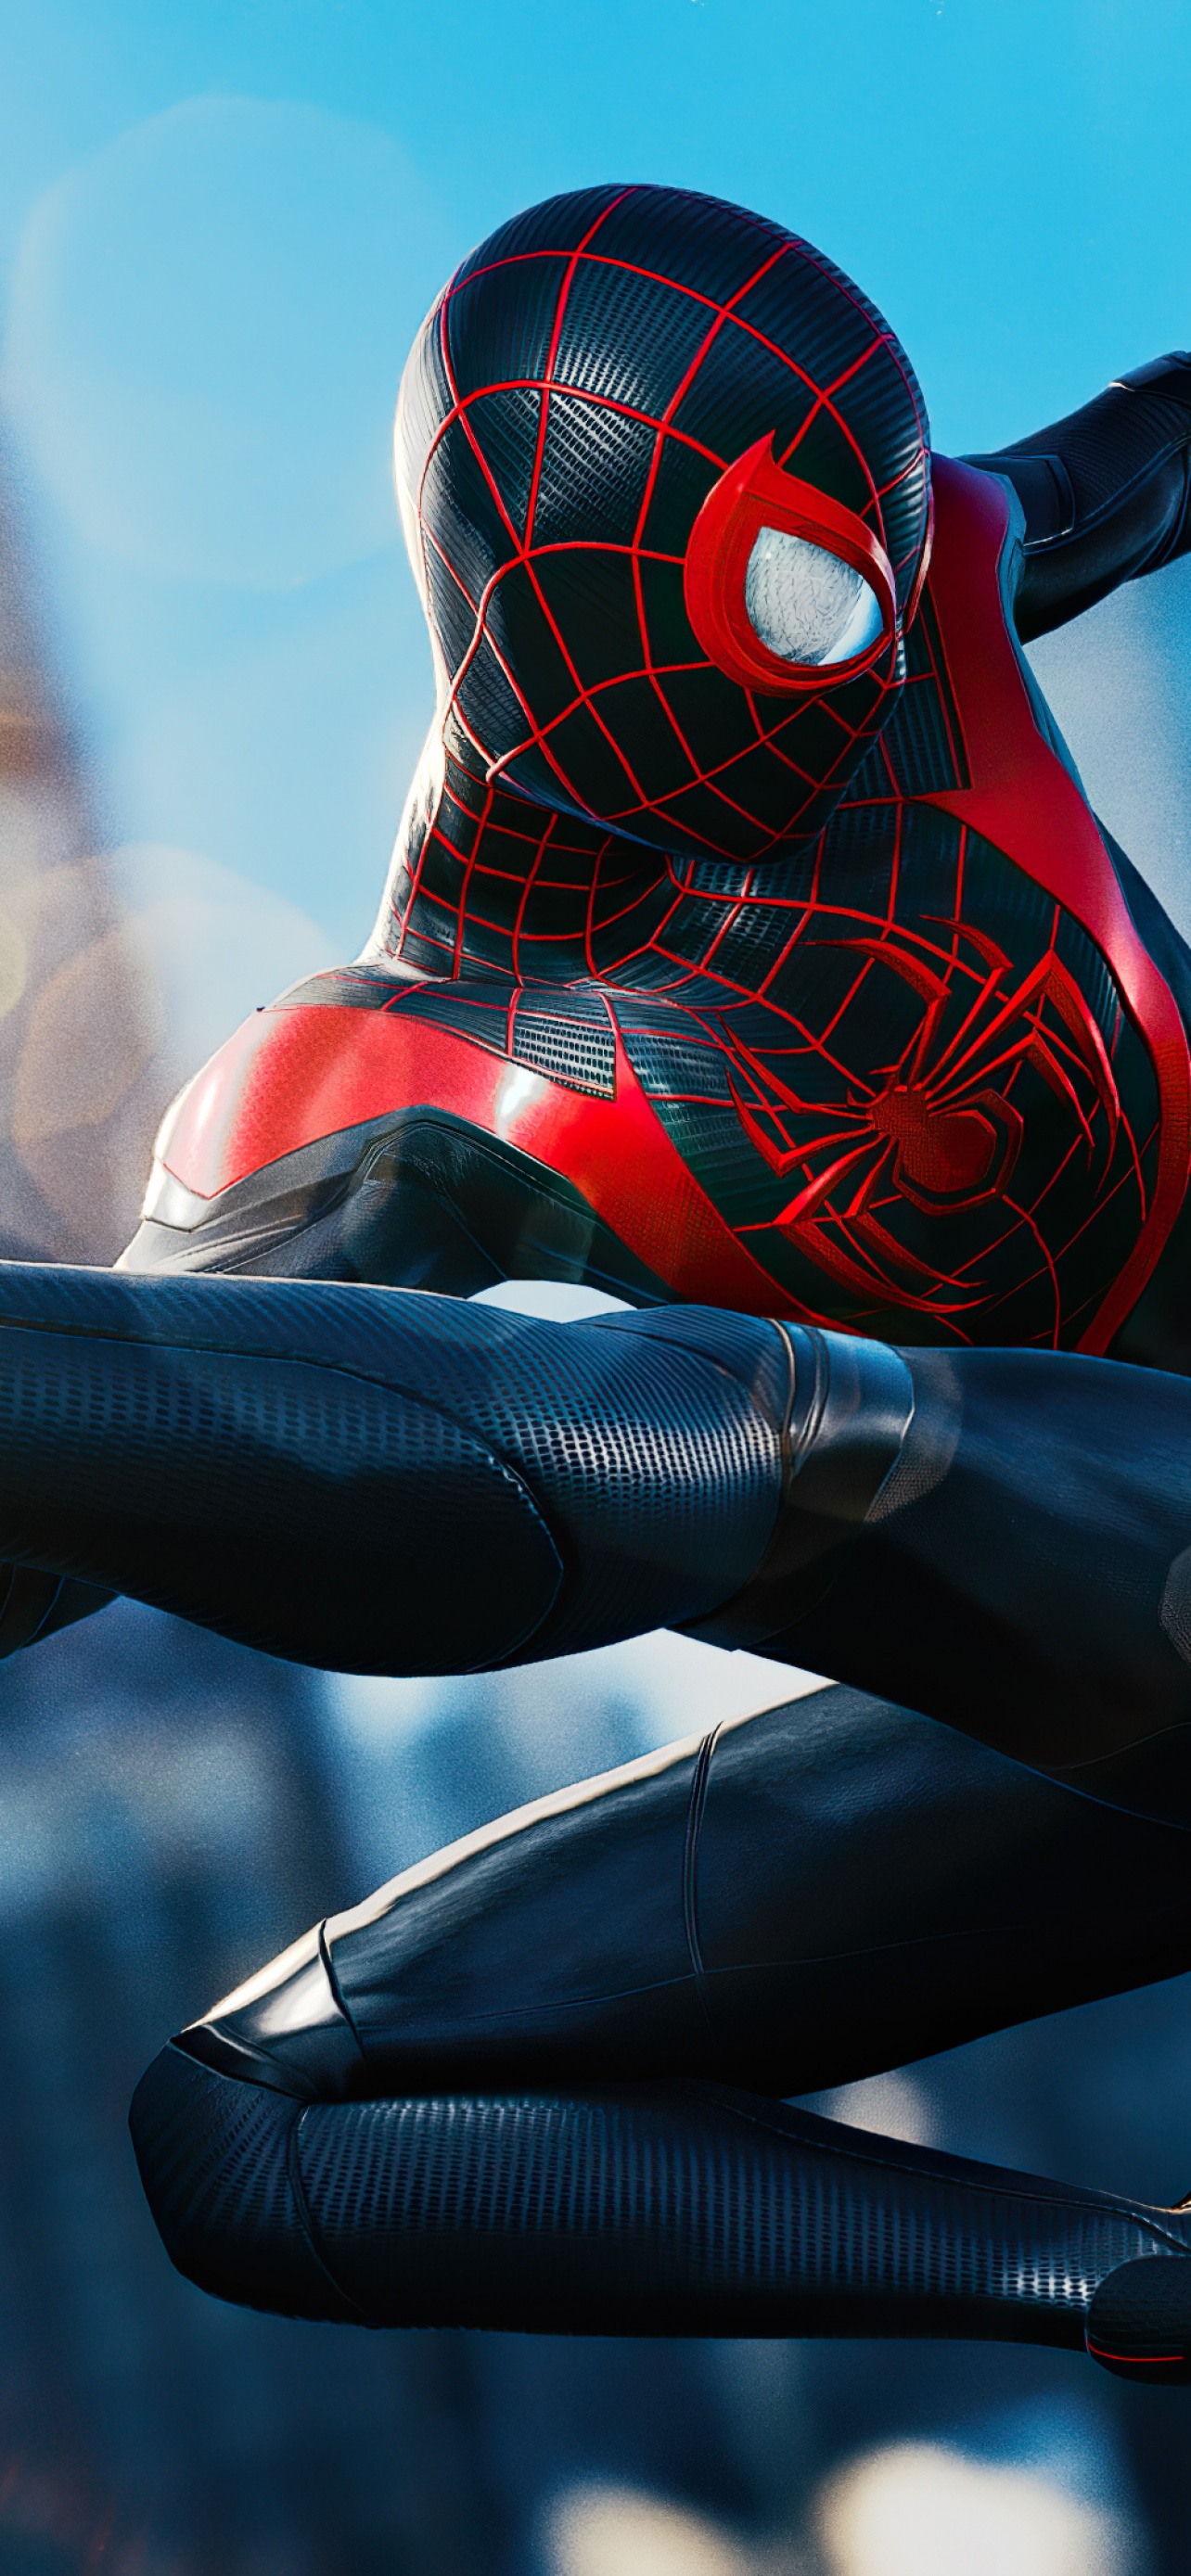 Hình nền Spider-Man: Miles Morales 4K: Lấy bối cảnh tòa nhà cao chọc trời, cùng với vẻ đẹp nghệ thuật tuyệt vời, hình nền Spider-Man: Miles Morales 4K sẽ mang lại trải nghiệm siêu thực cho màn hình của bạn. Hãy xem và cảm nhận những trận đấu kịch tính của siêu anh hùng Spider-Man với những tên ác nhân nguy hiểm.